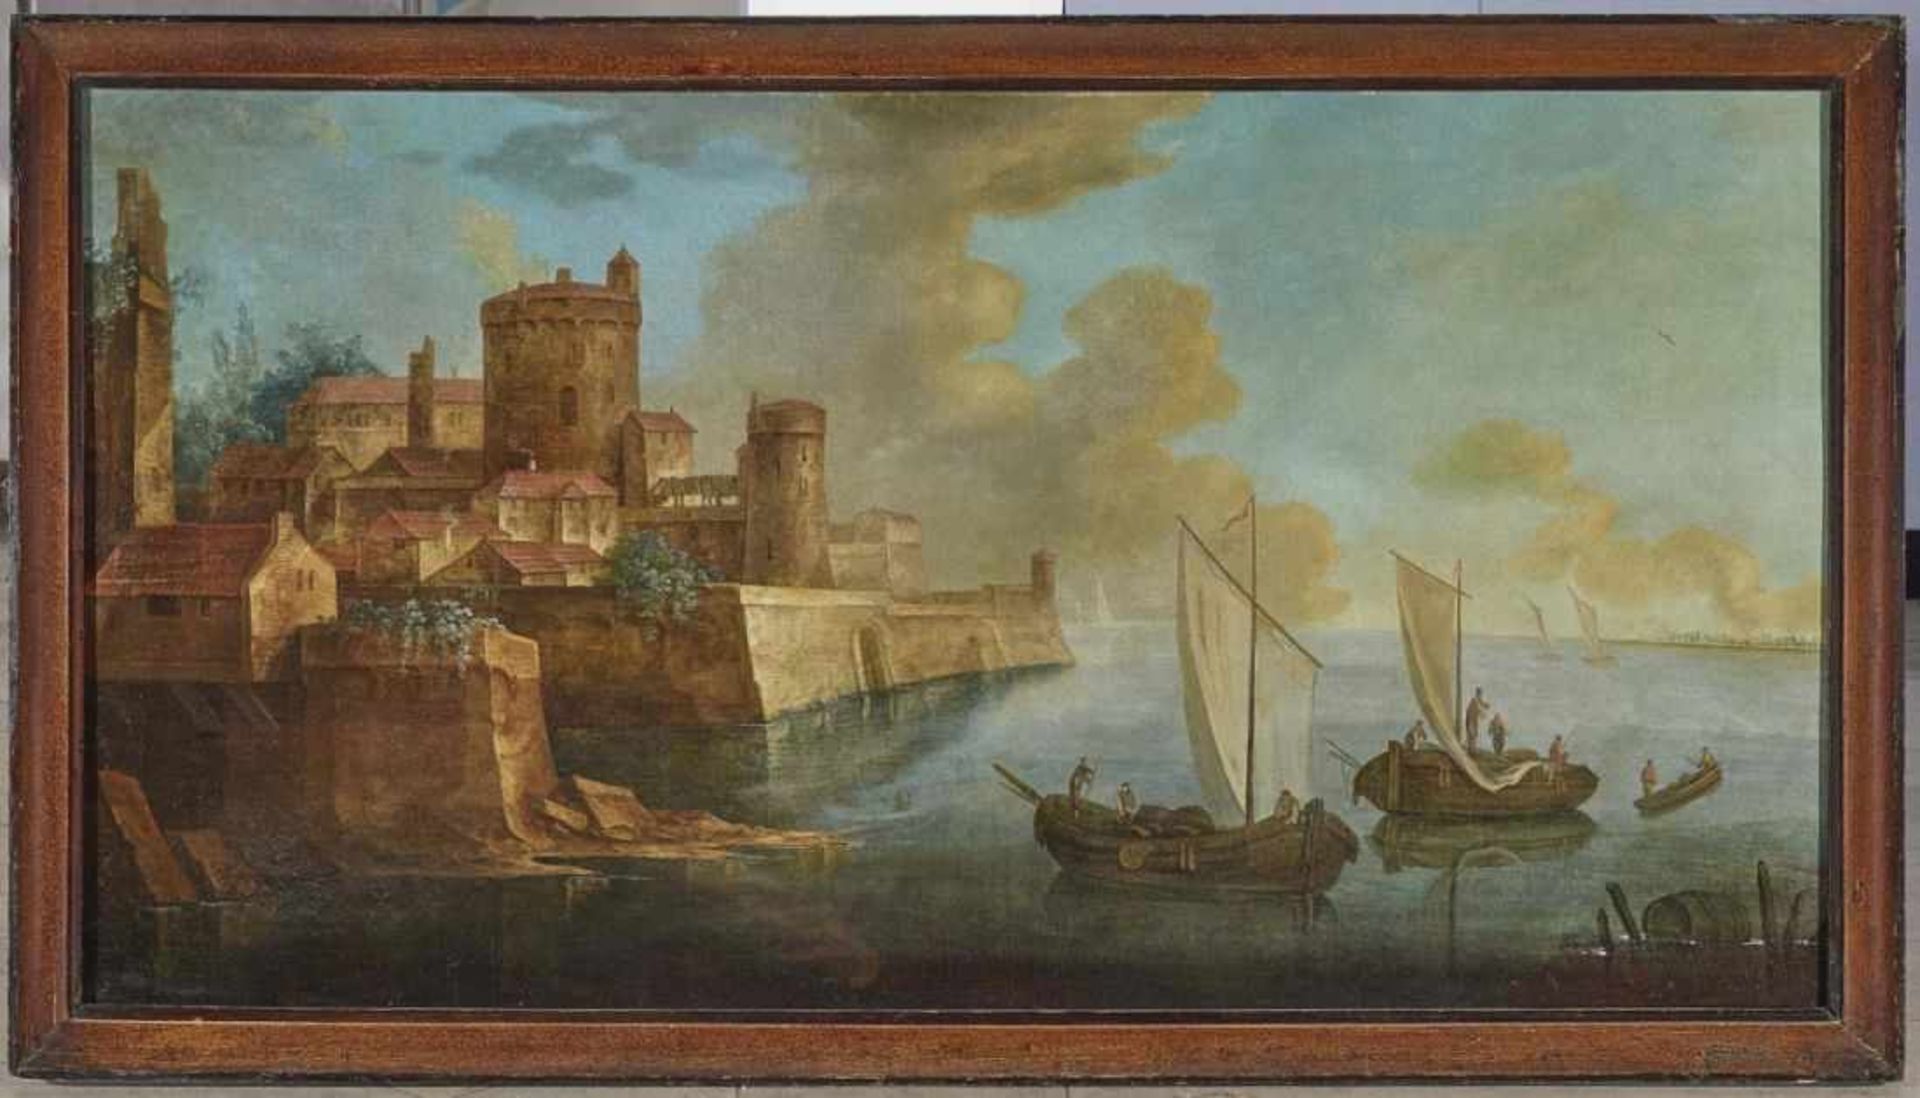 ITALIEN 17./18. Jh. Hafenstadt mit Castello und Schiffen Öl auf Lwd. 90 x 170 cm. Firnis - Image 2 of 3